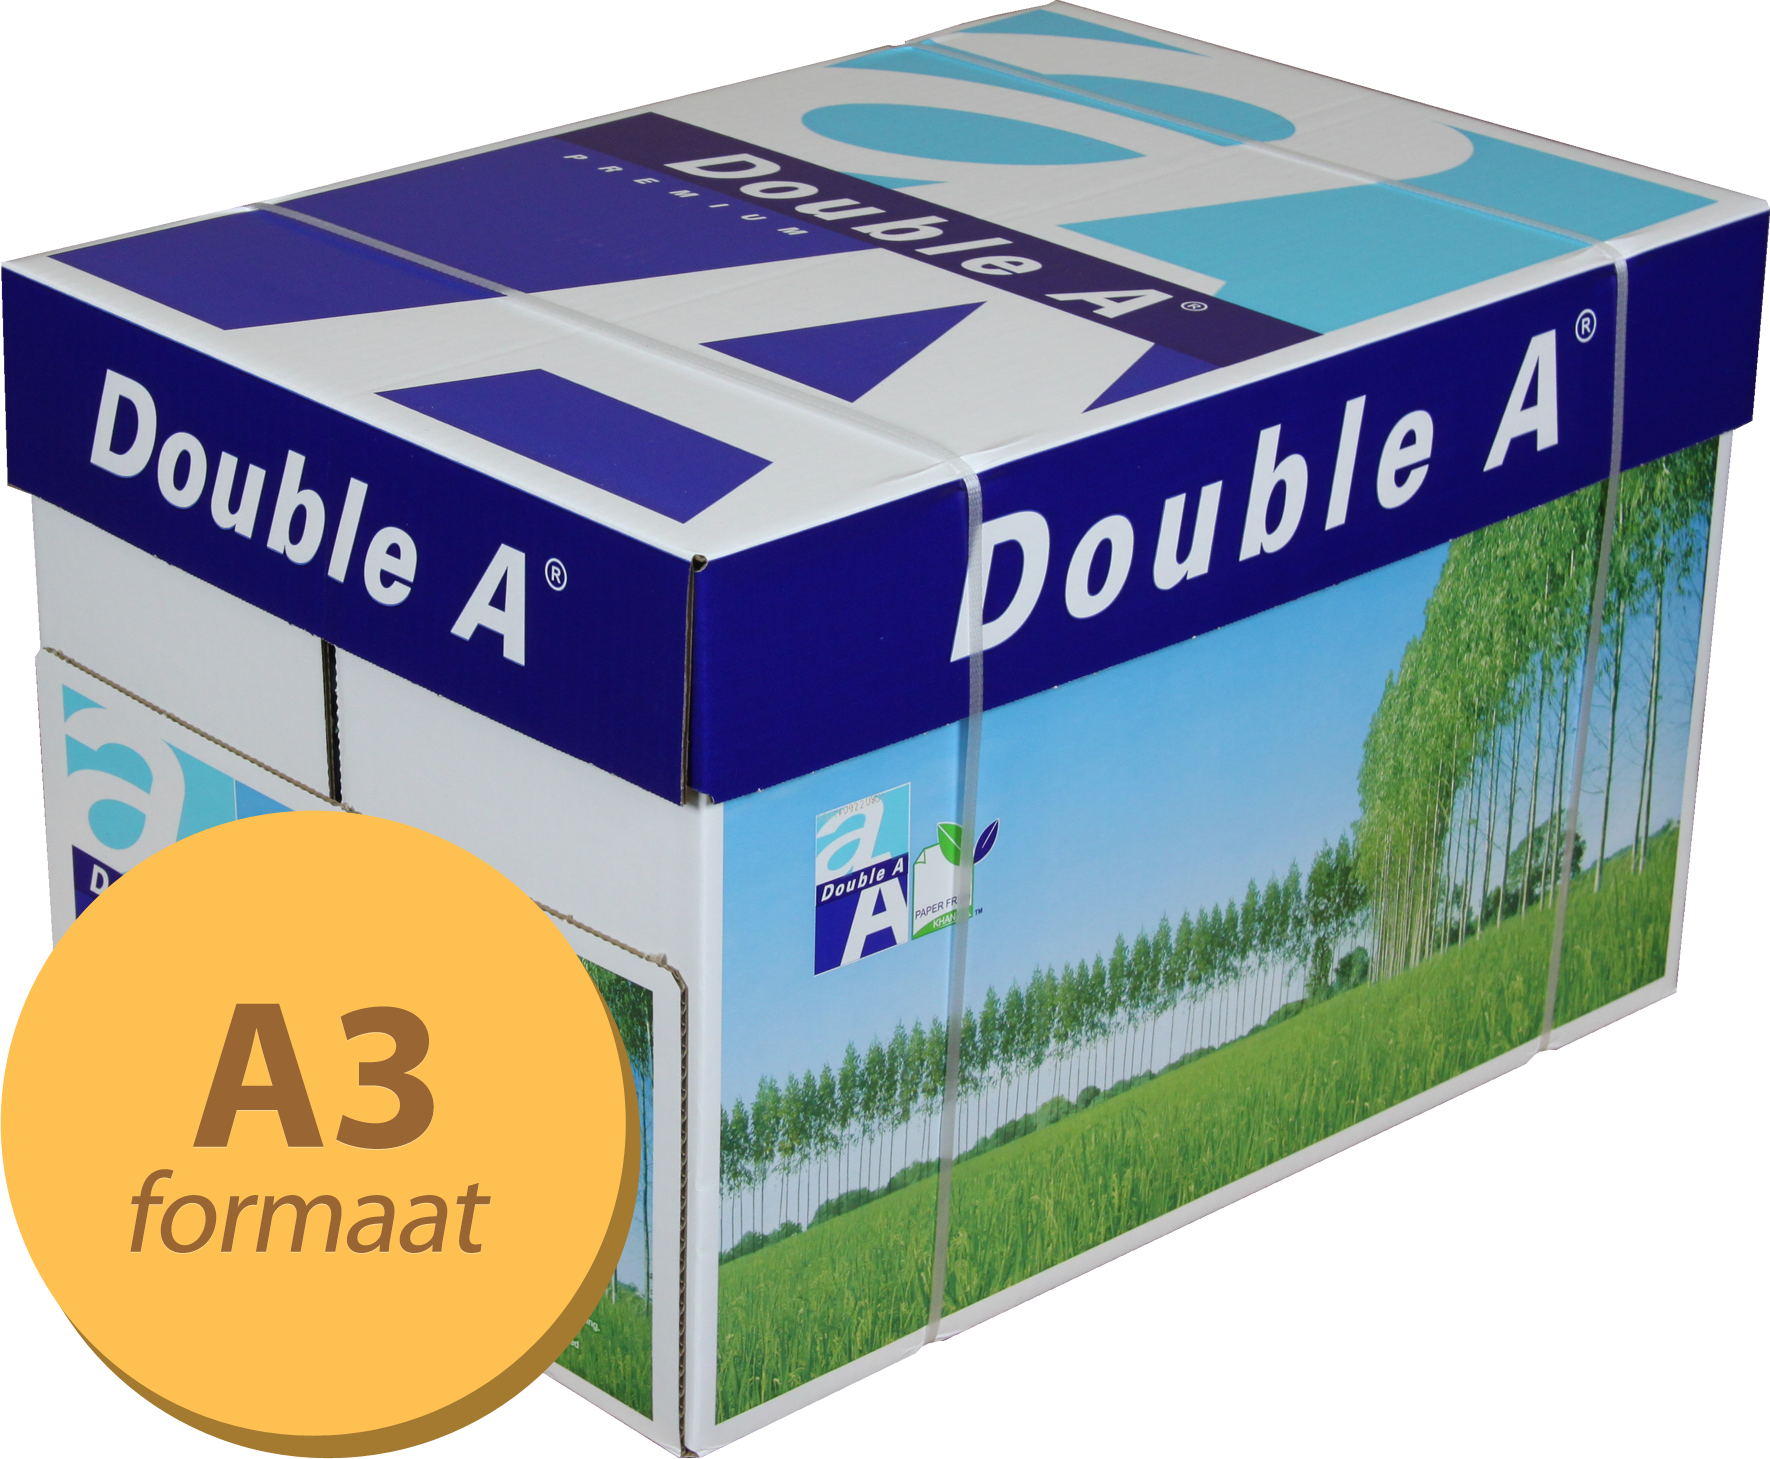 Double A Premium A3 papier 5 pakken (80 grams) wit